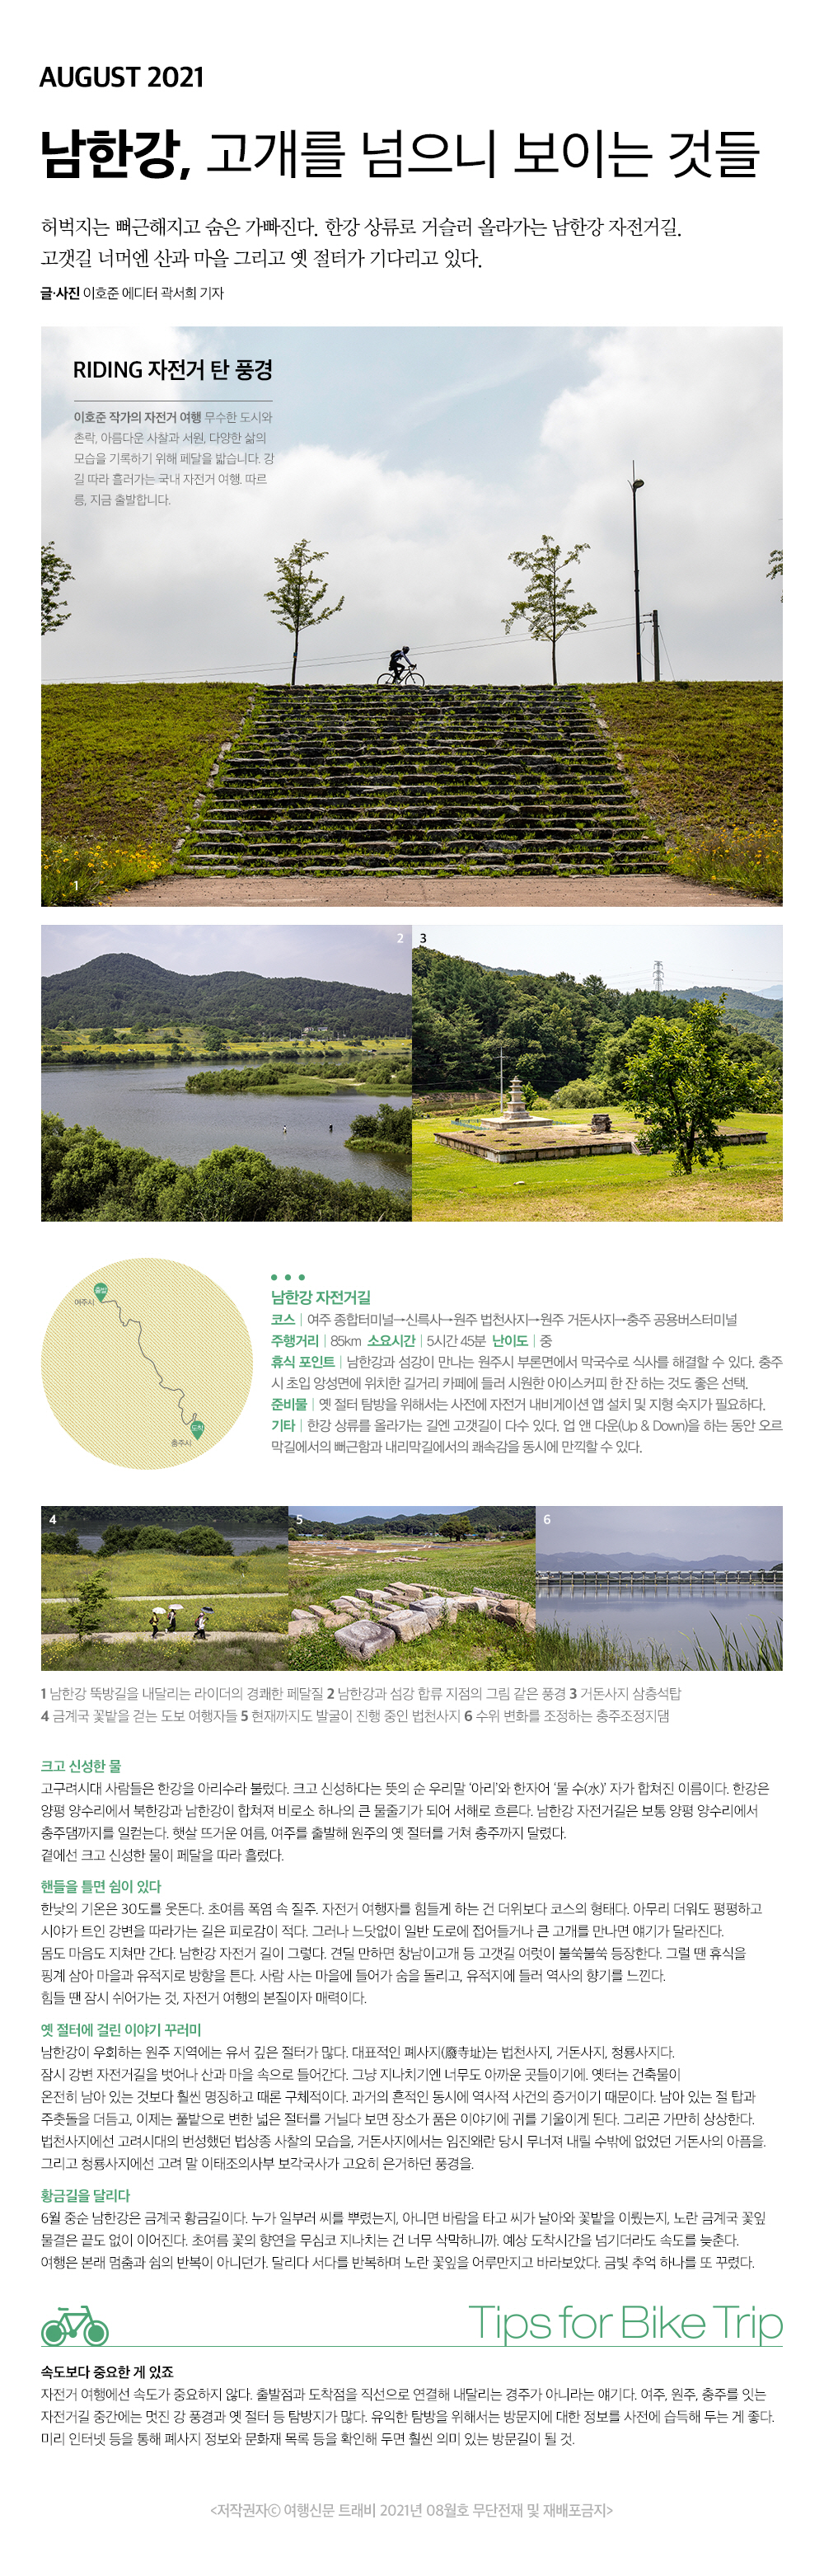 남한강, 고개를 넘으니 보이는 것들